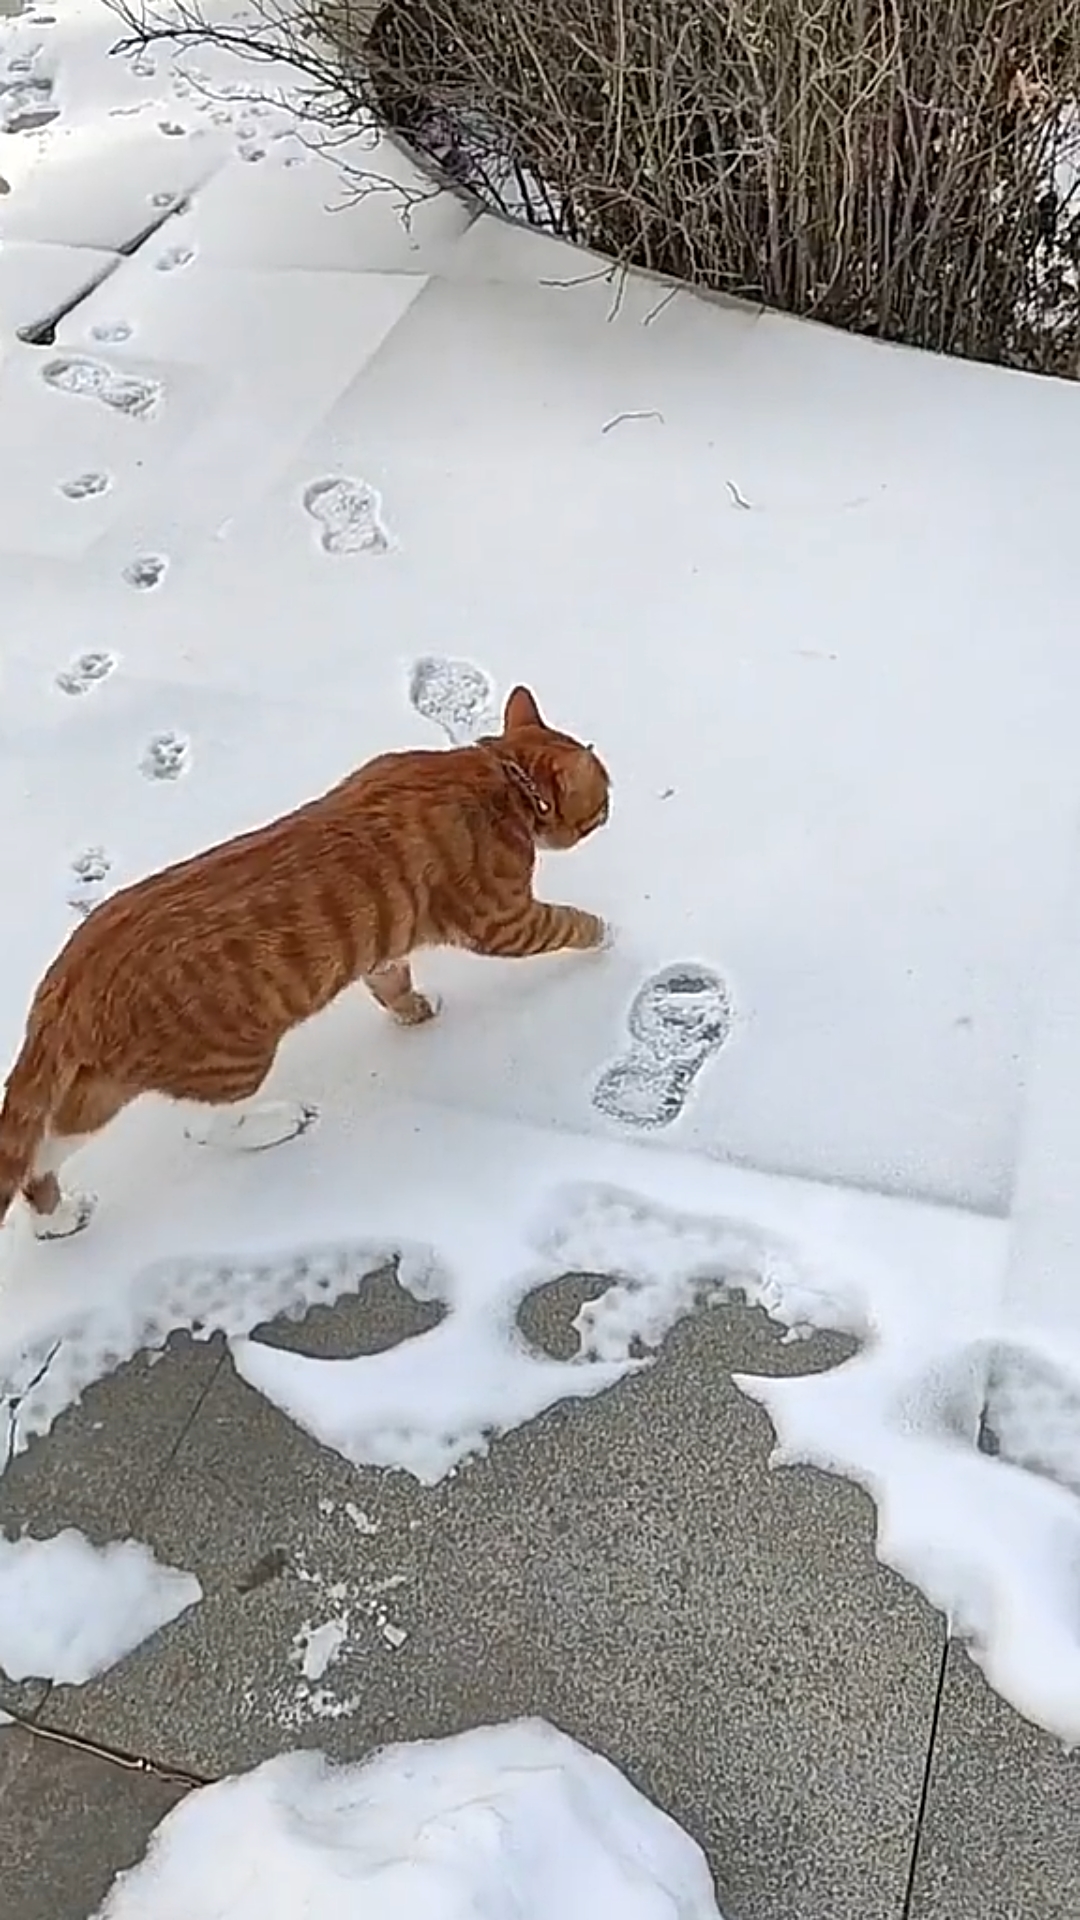 猫:冻脚啊,踩前两个脚印后脚就不凉了只冻前两只脚